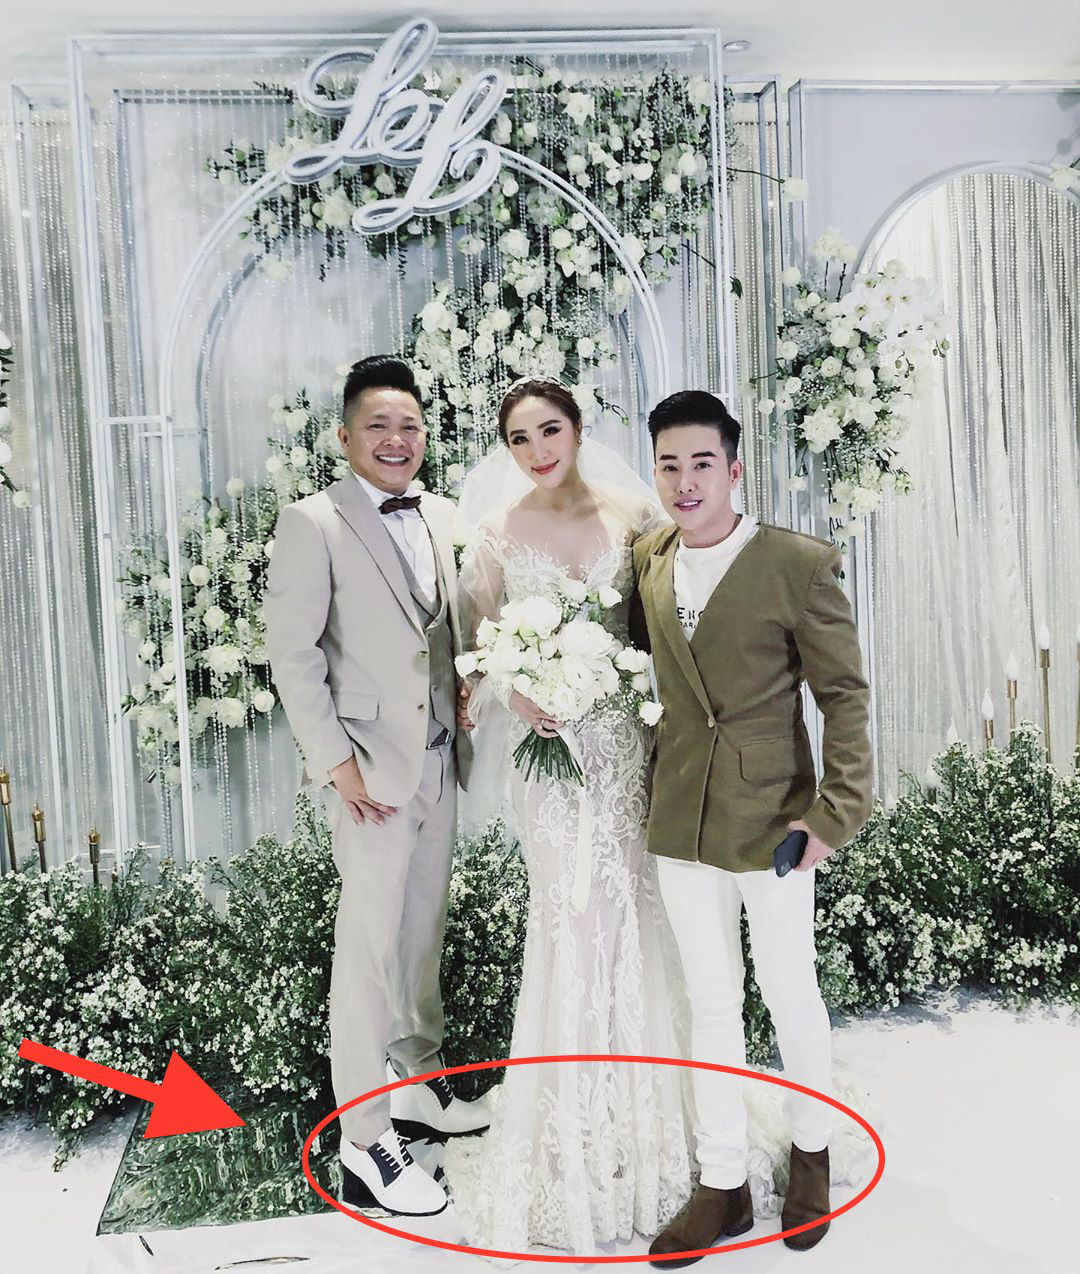 Đám cưới của Bảo Thy là một trong những đám cưới đình đám và được quan tâm nhiều nhất trong thế giới showbiz Việt. Hãy cùng xem lại hình ảnh của đám cưới này để thấy được sự tinh tế và hoành tráng của đám cưới này nhé!